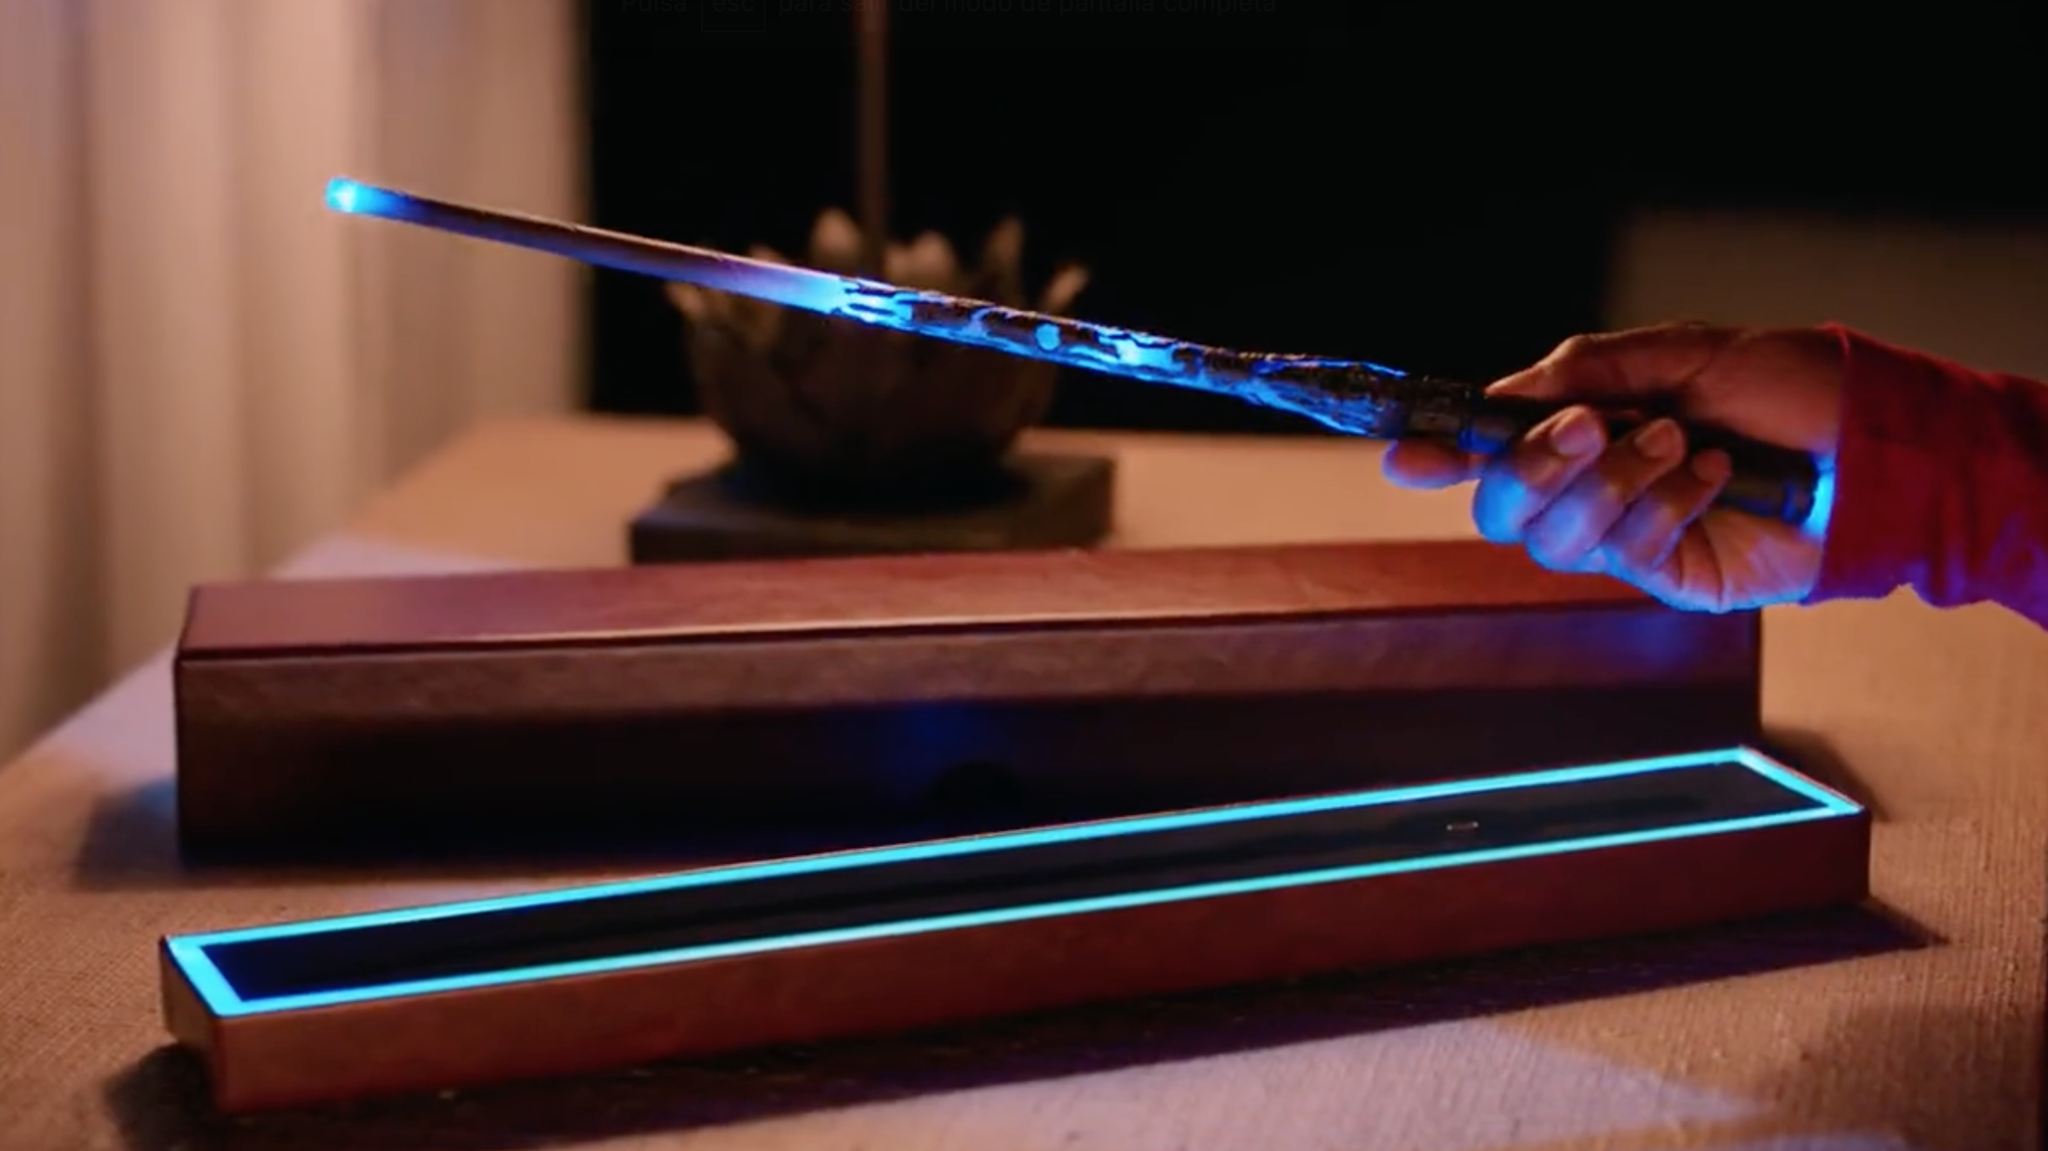 Crean una varita de Harry Potter tipo Alexa capaz de encender y apagar las luces y aparatos de tu casa